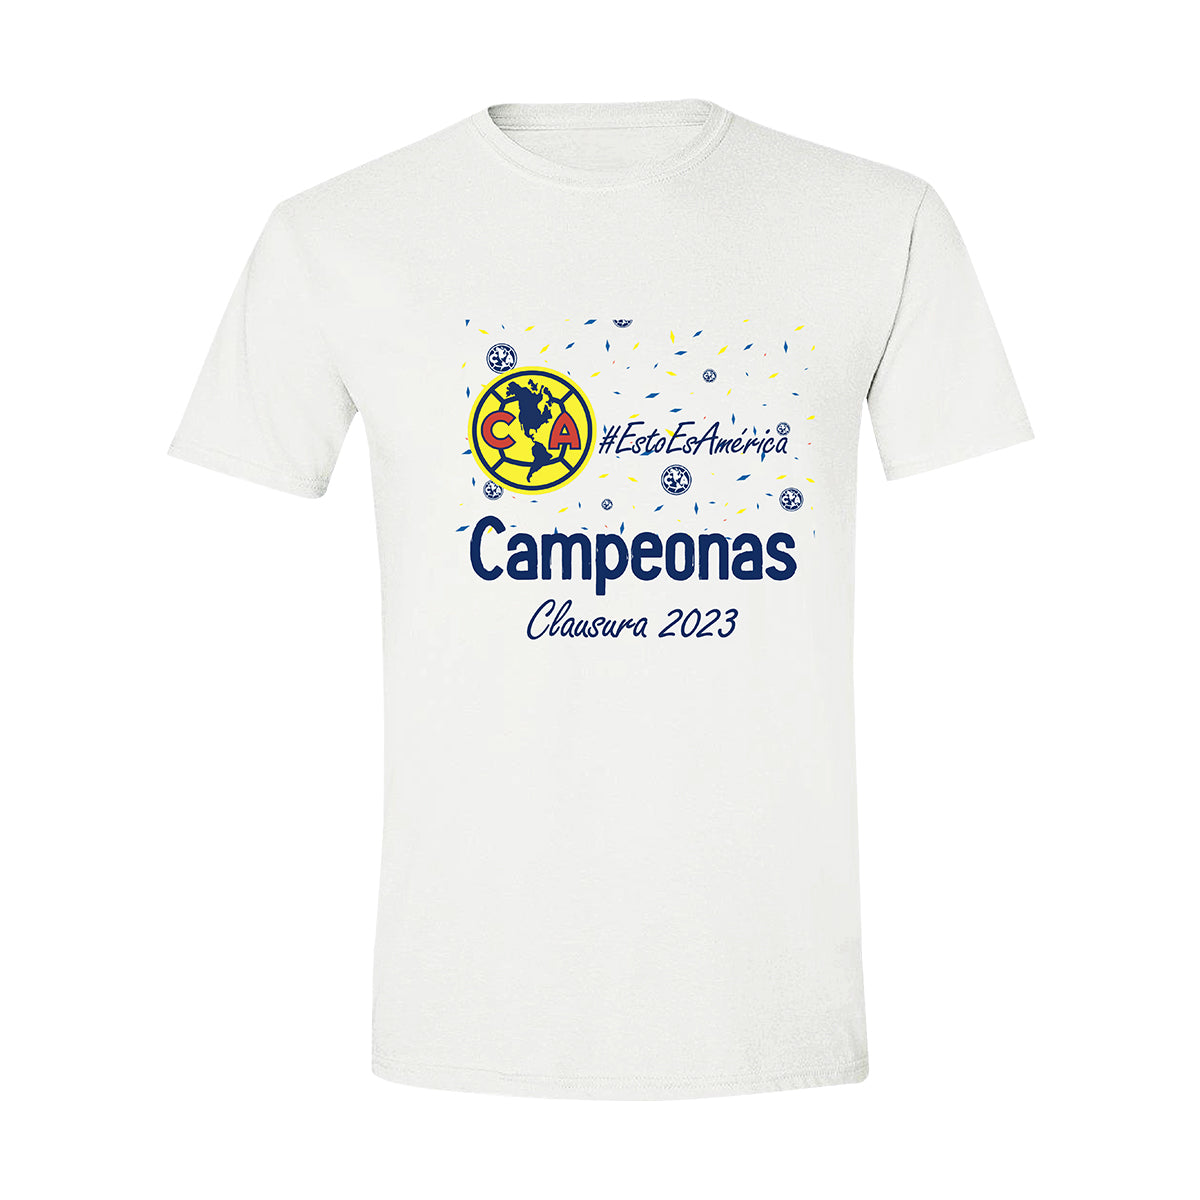 Playera Club América Campeonas Cl 2023 Hombre OD77492